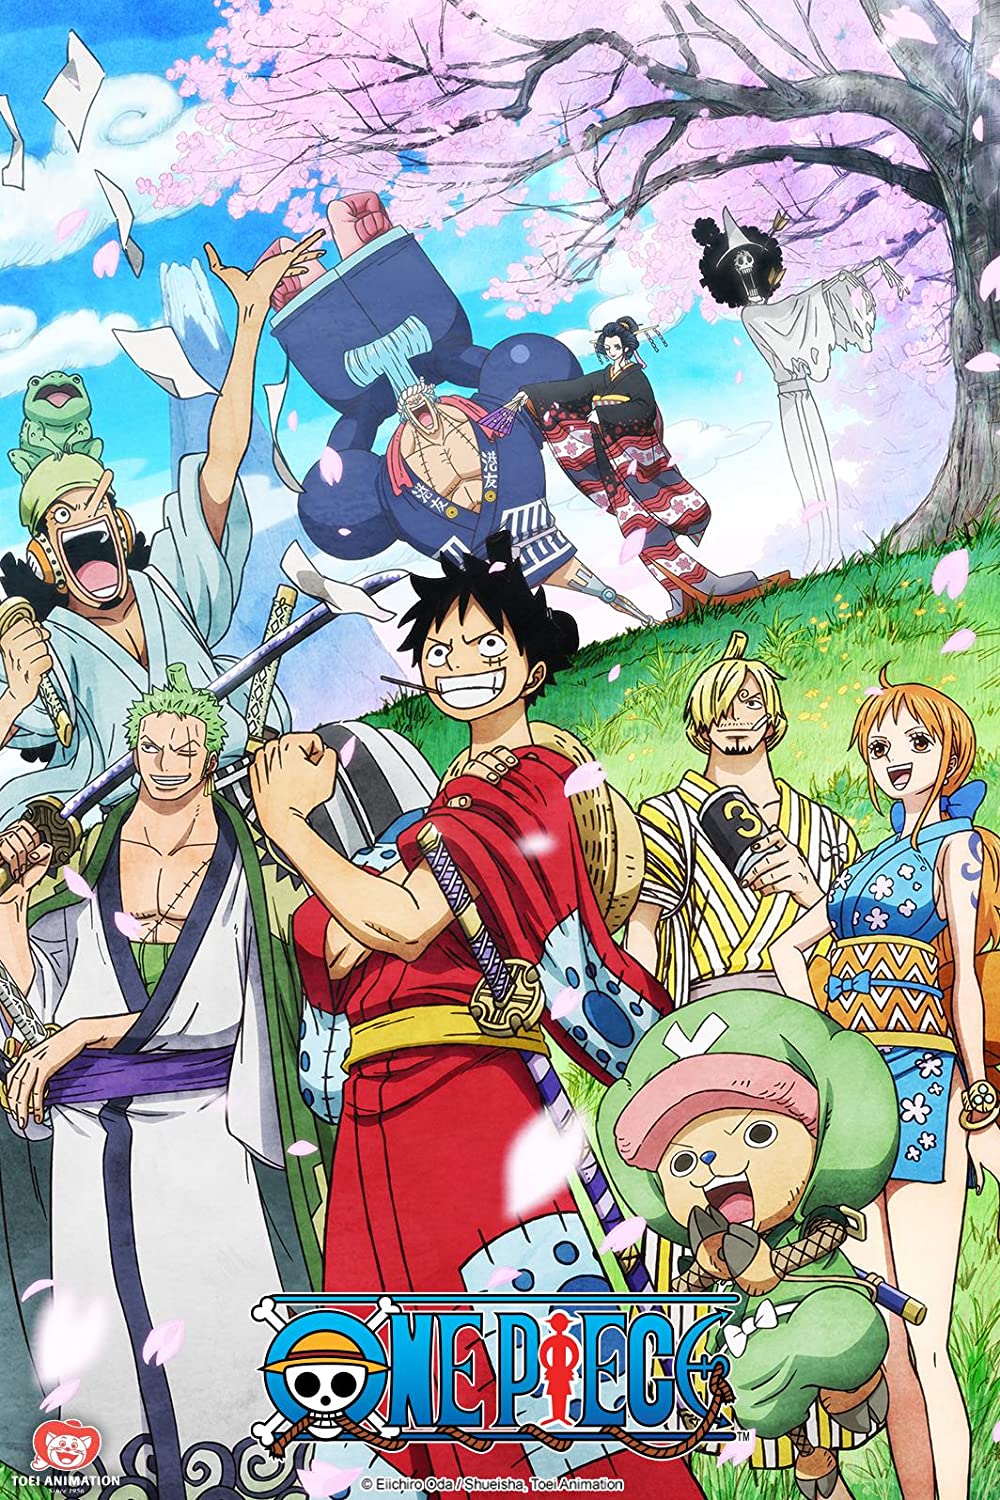 ดูหนังออนไลน์ฟรี One Piece Season 1 EP.28 วันพีช อิสท์บลู ซีซั่น 1  ตอนที่ 28